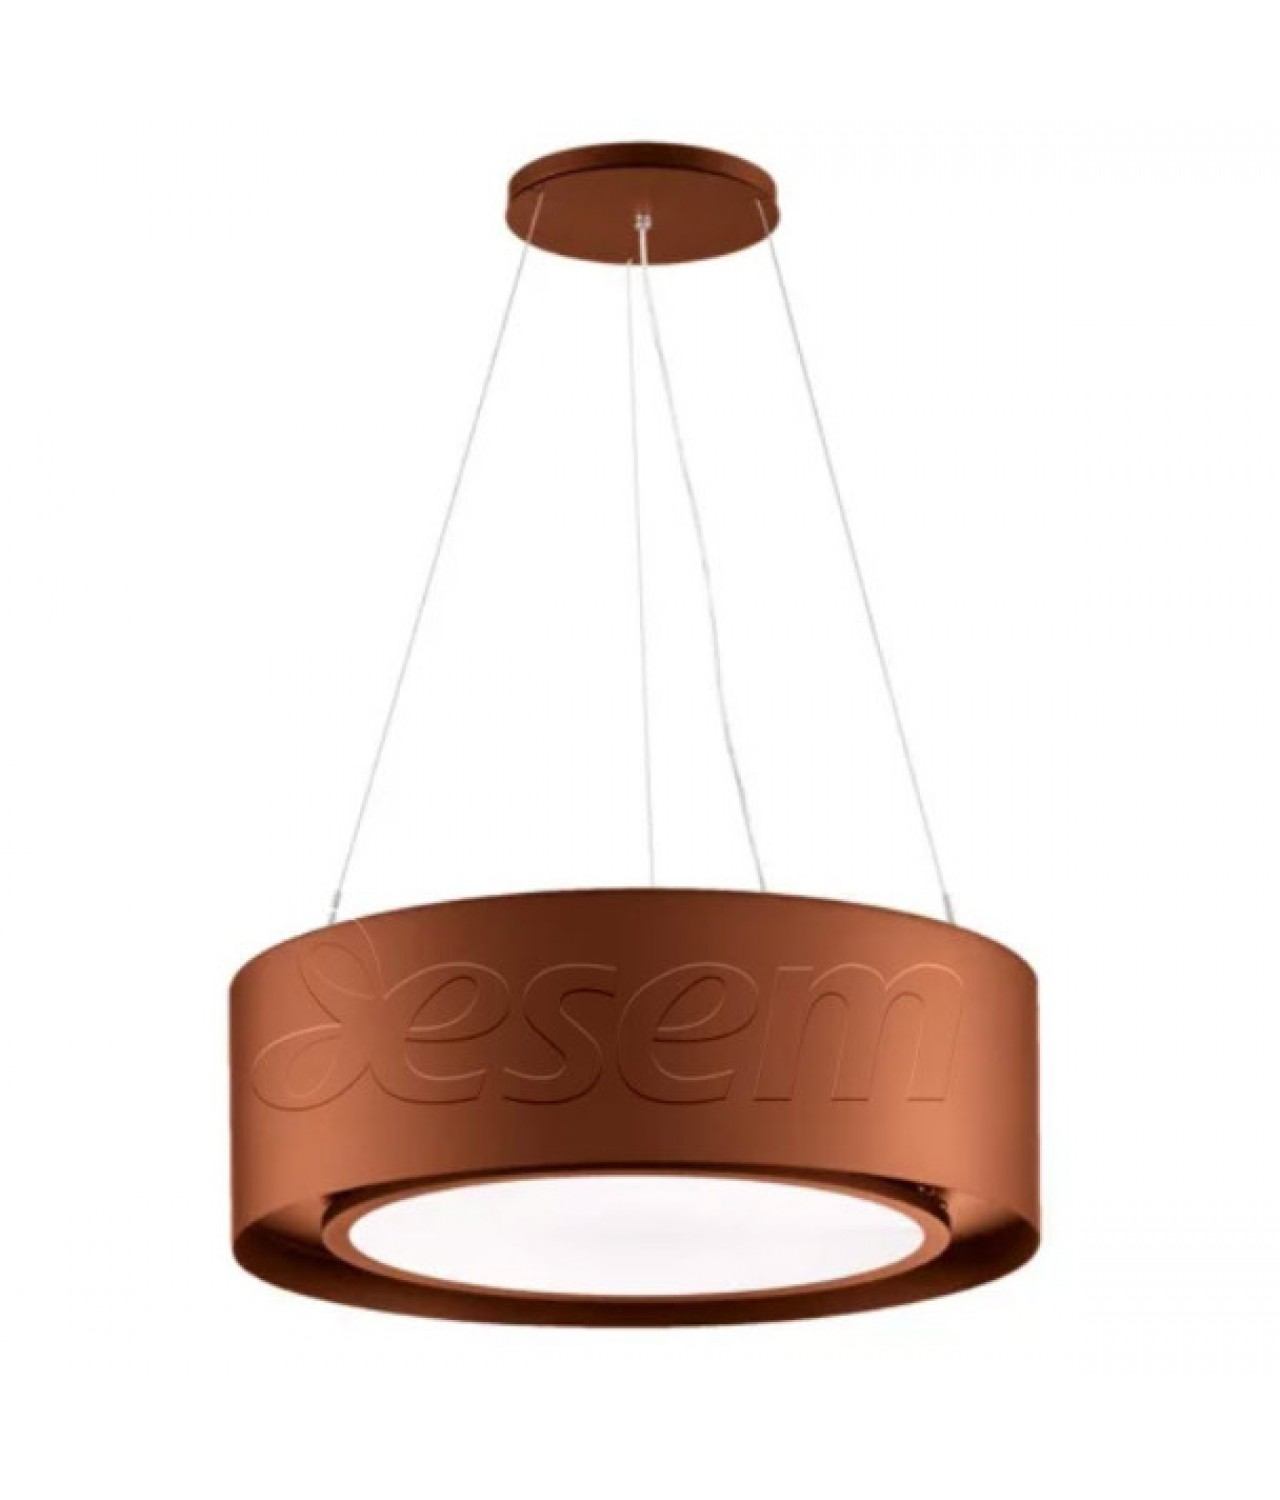 Плазменная вытяжка Cleanair Cloud copper со светодиодной лампой